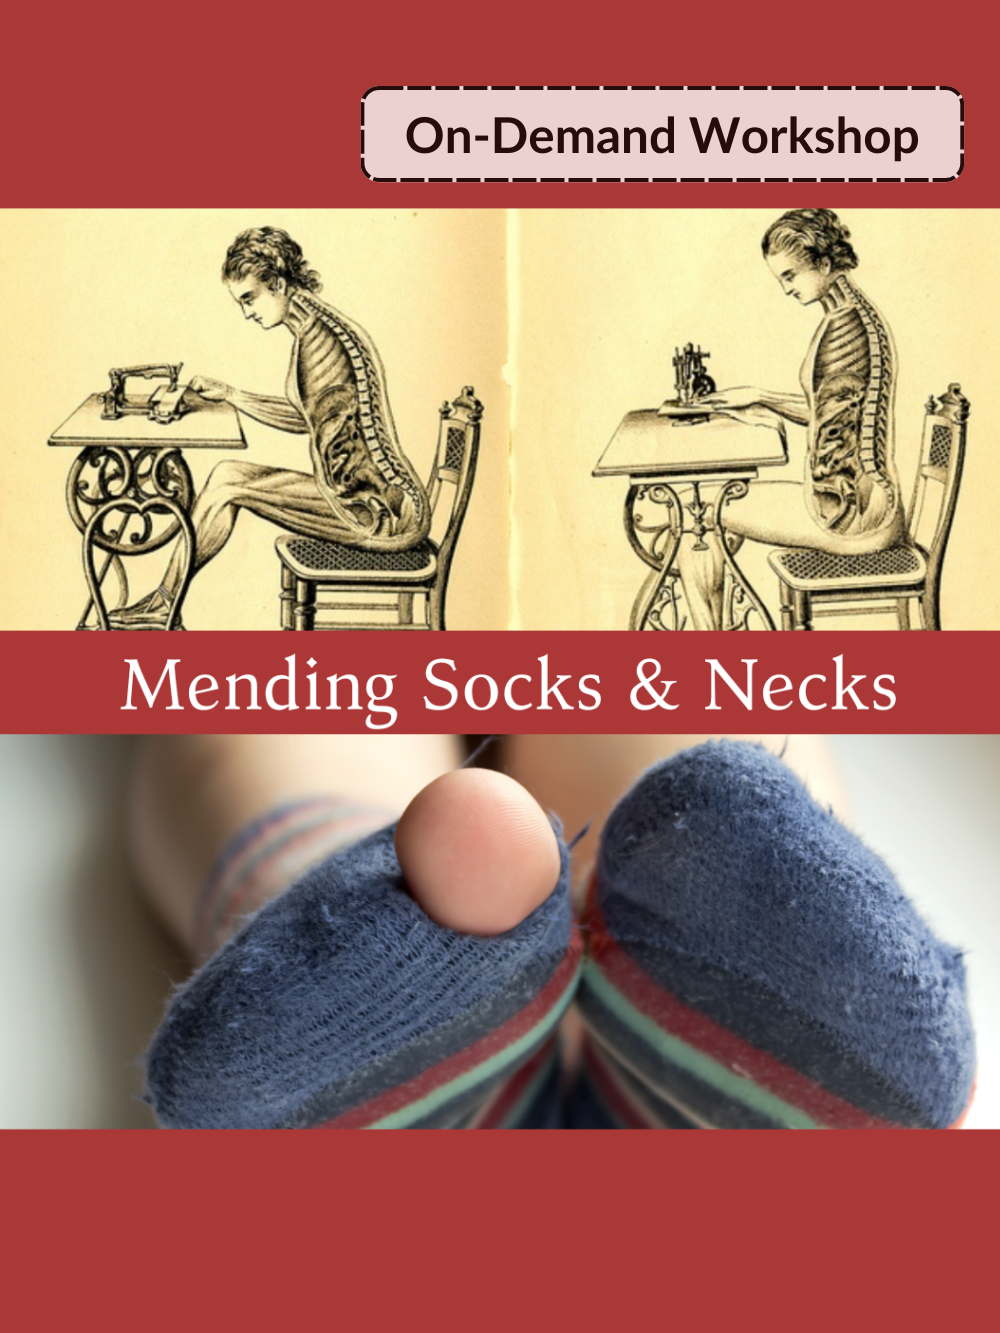 On-demand workshop. Mending socks & necks.